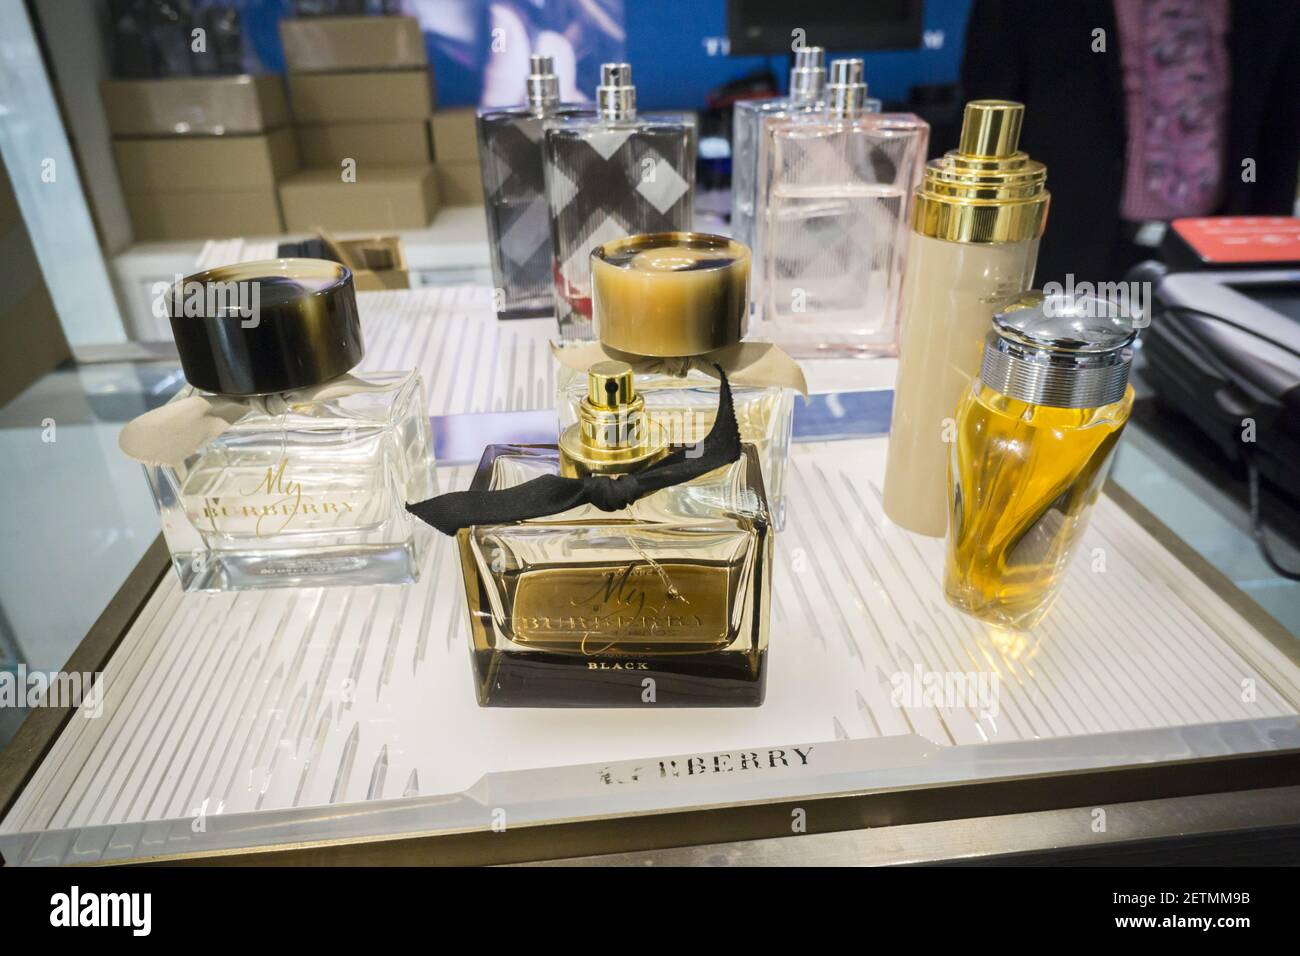 Probadores de perfume Burberry se ven en la tienda de Macy's Herald Square  en Nueva York el lunes, 3 de abril de 2017. Burberry ha decidido licenciar  su negocio de fragancias y